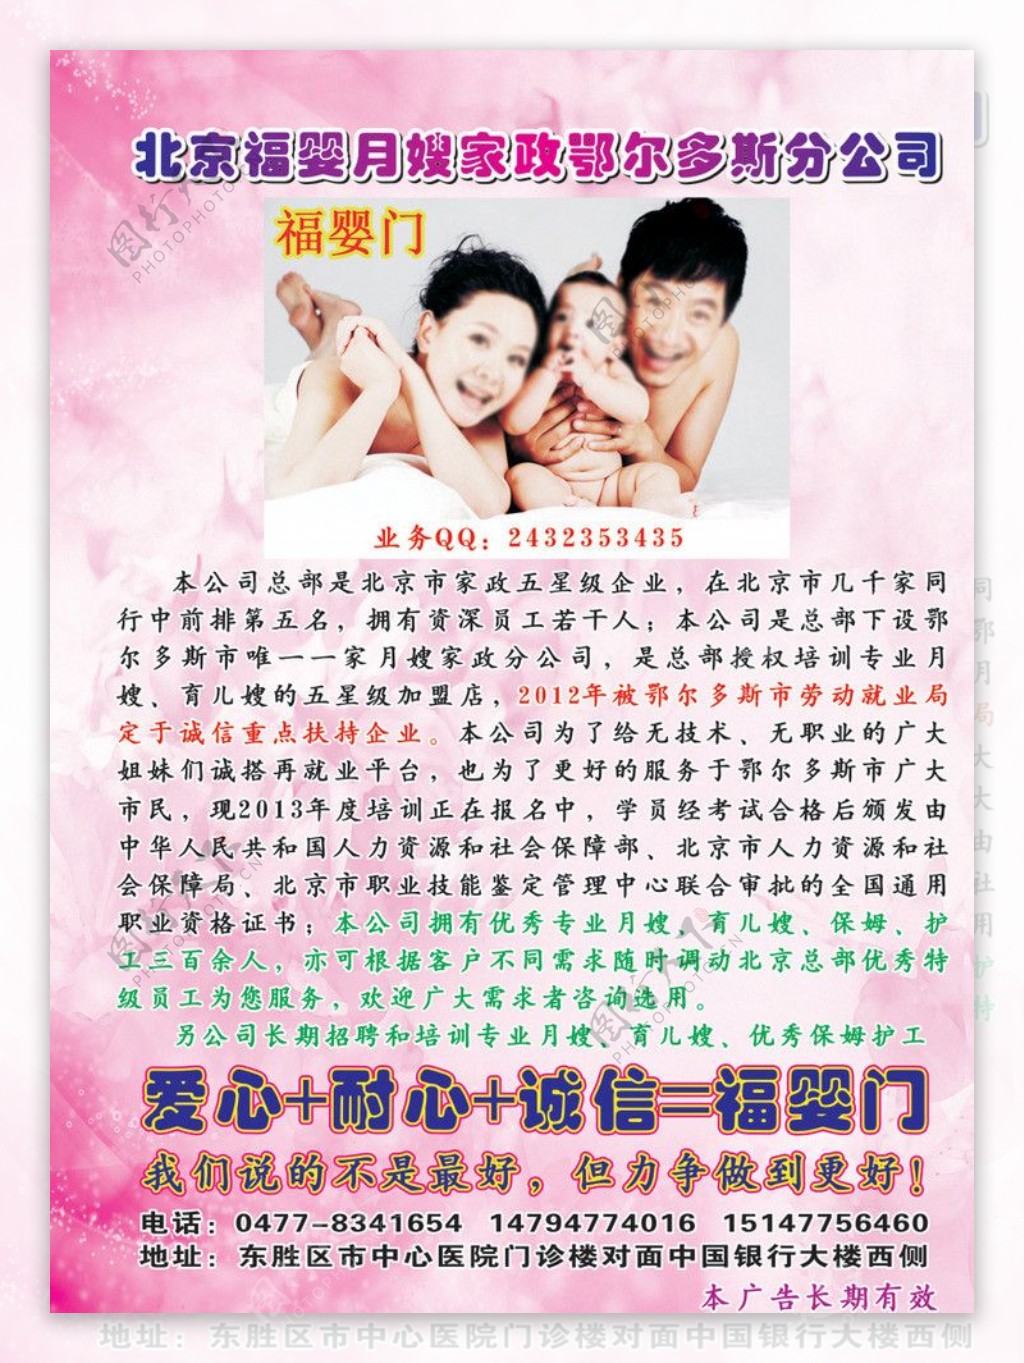 北京福婴门月嫂鄂尔多斯分公司彩页宣传单图片